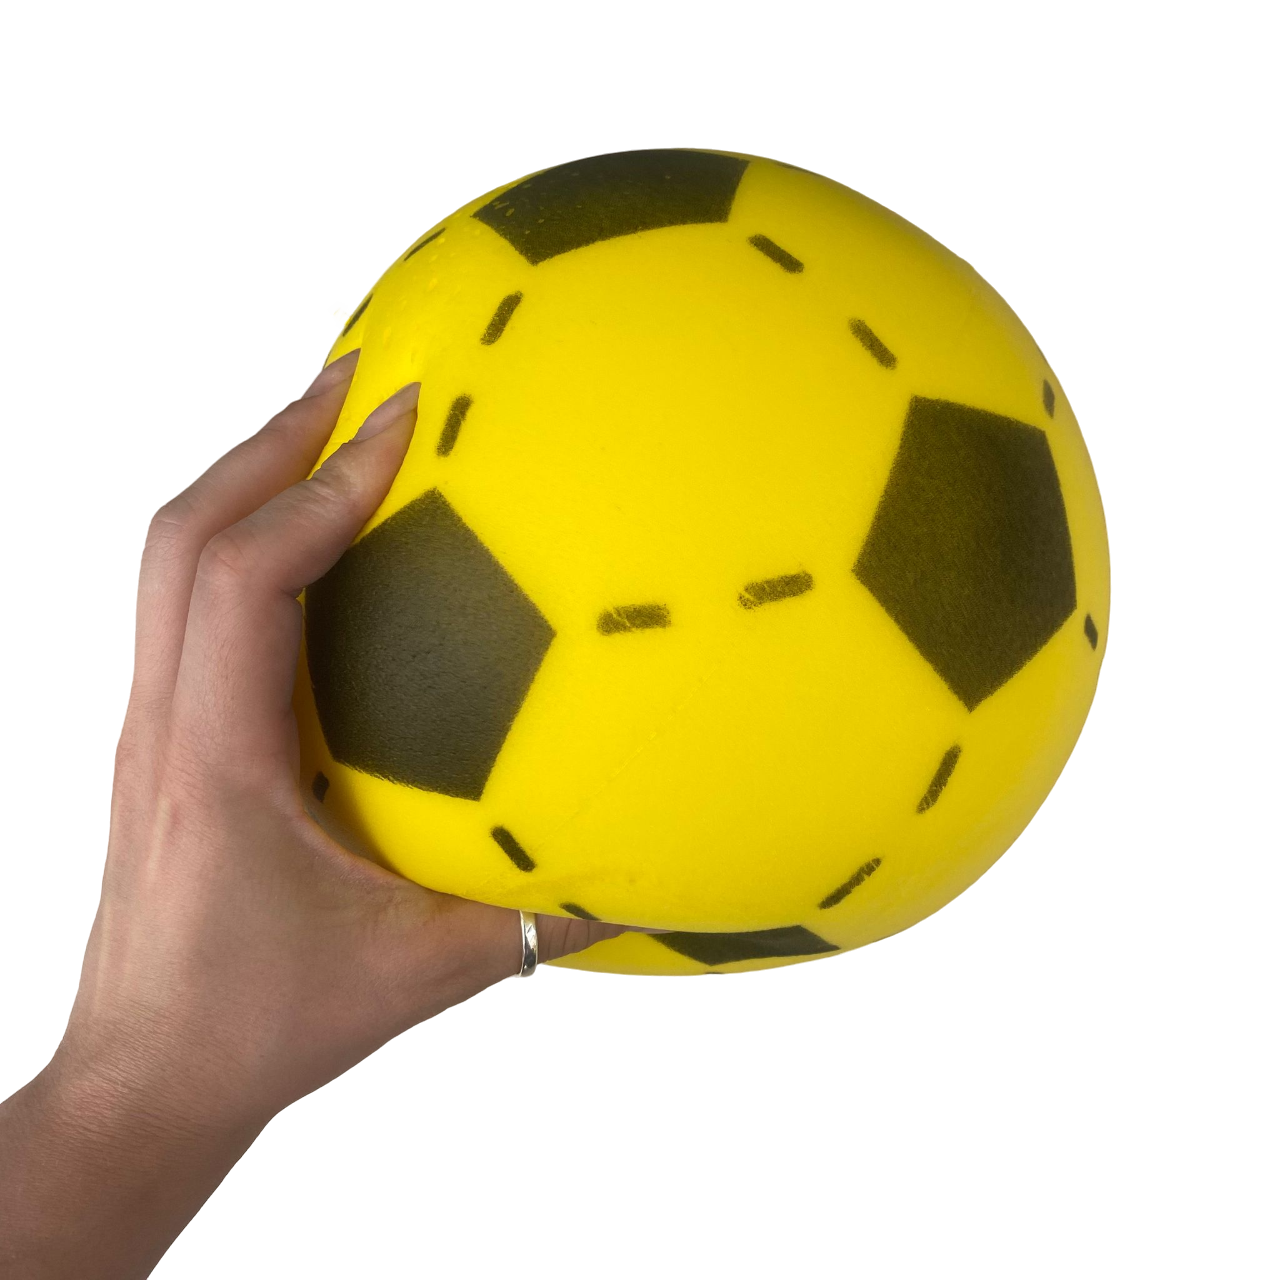 Contes pallone in spugna 82g diametro 12cm giallo